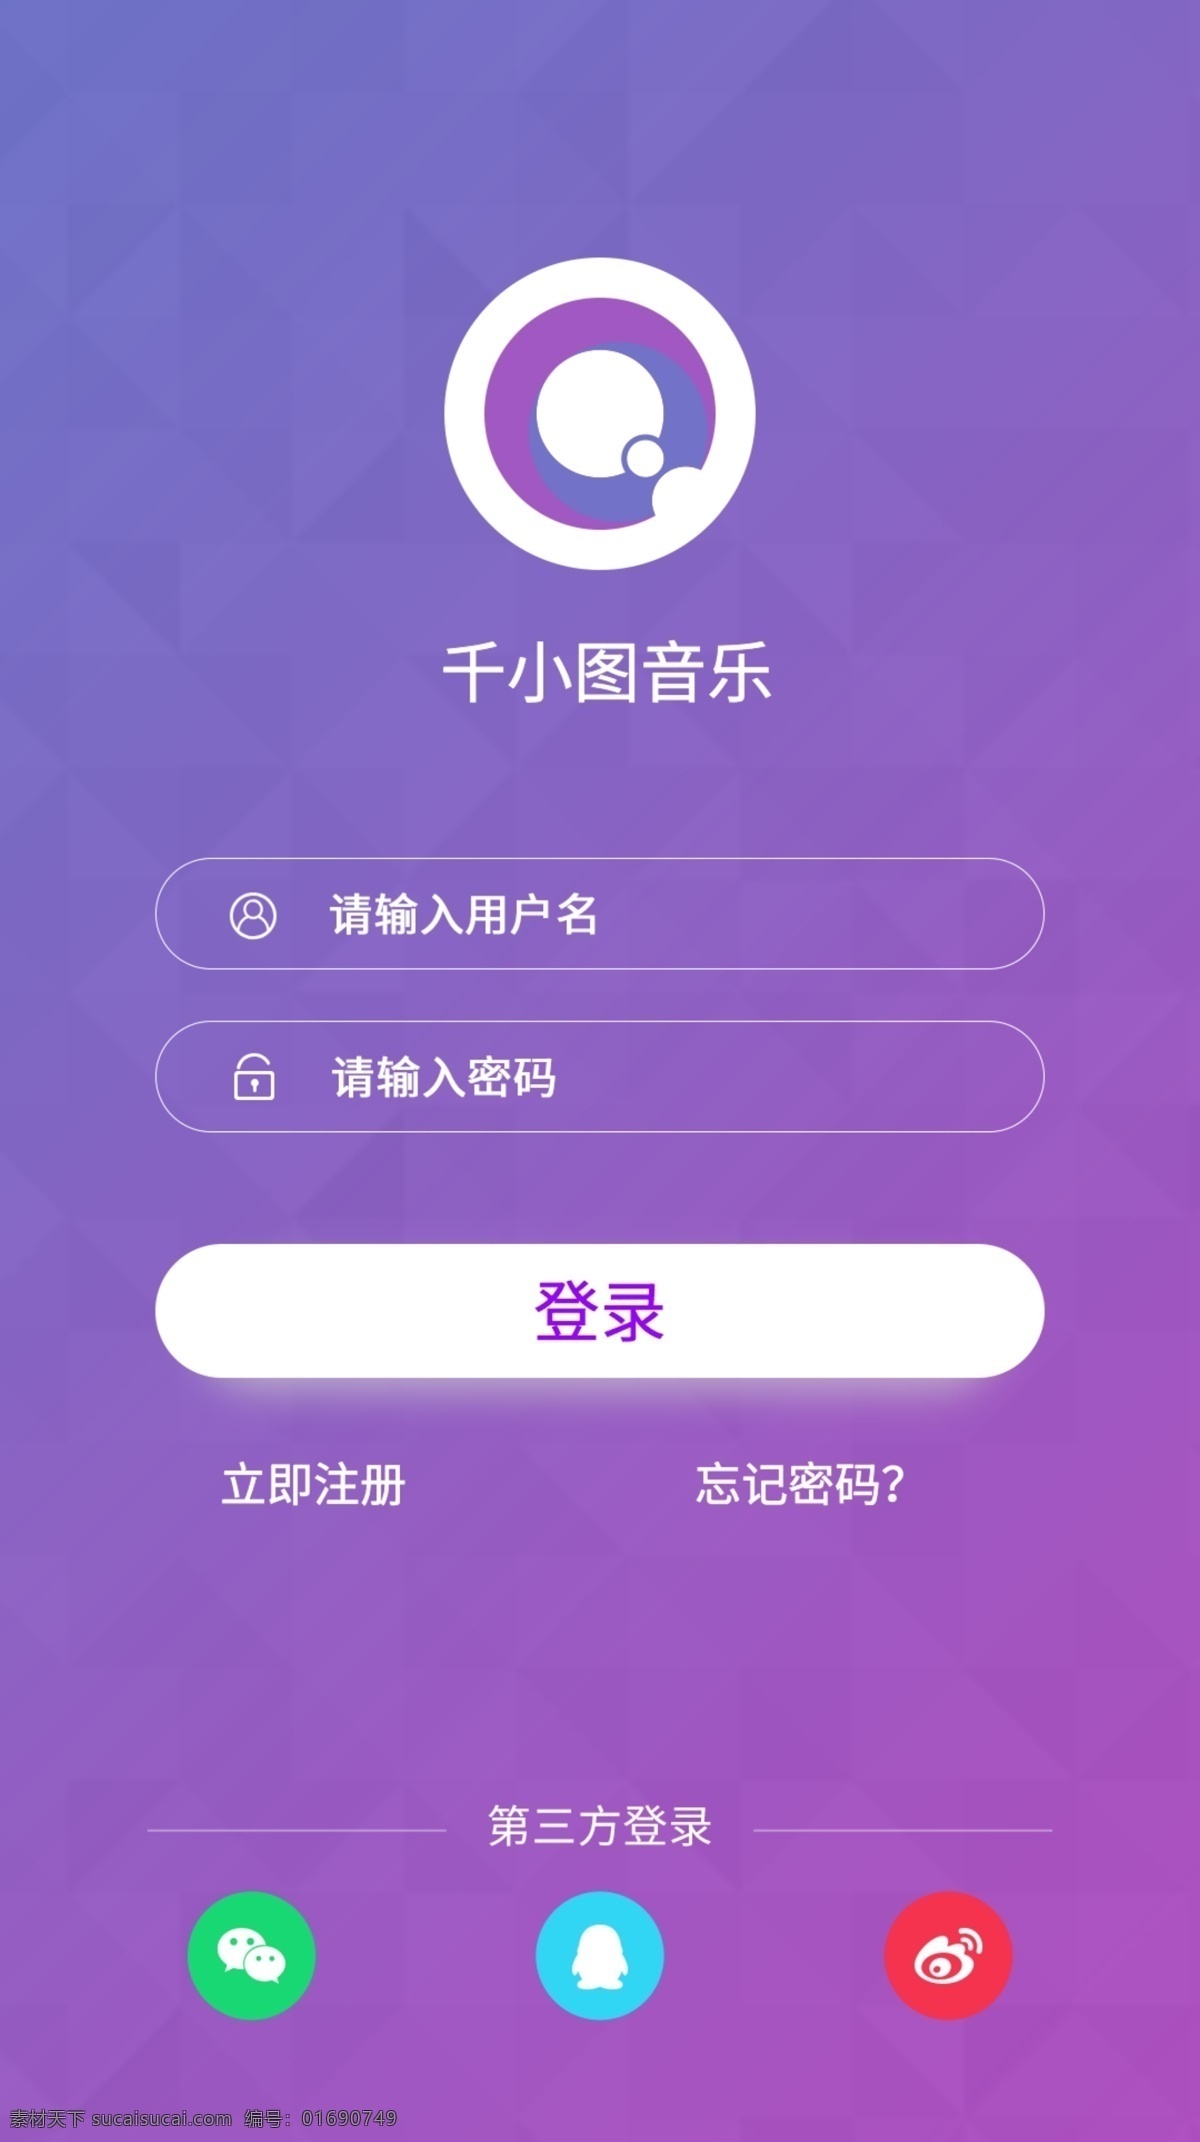 紫色 渐变 音乐 类 app 登录 注册 页面 界面